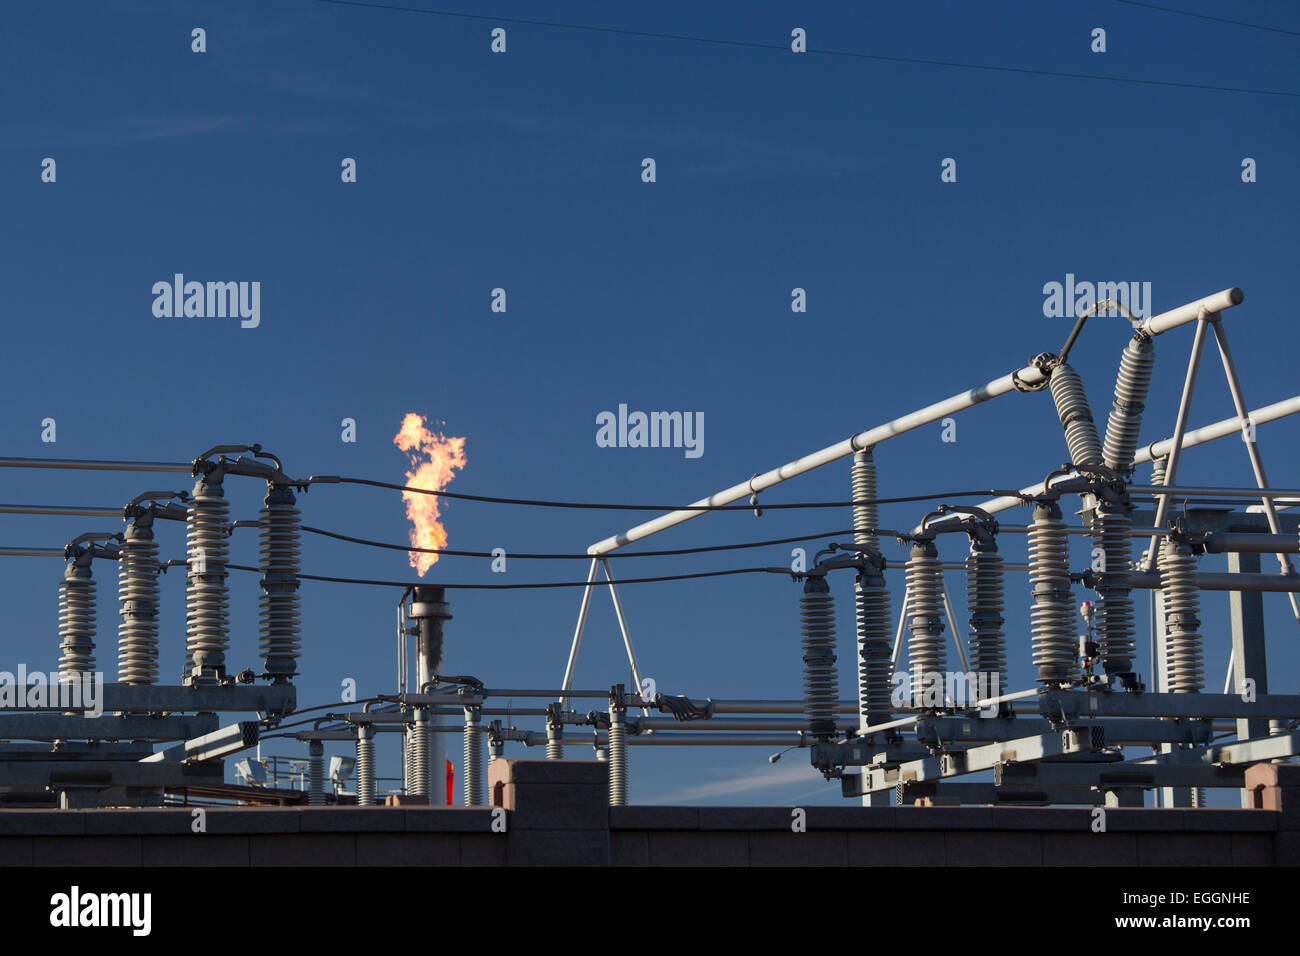 Denver, Colorado - une torchère brûle du gaz à près de matériel électrique à la raffinerie de pétrole de Suncor Énergie. Banque D'Images